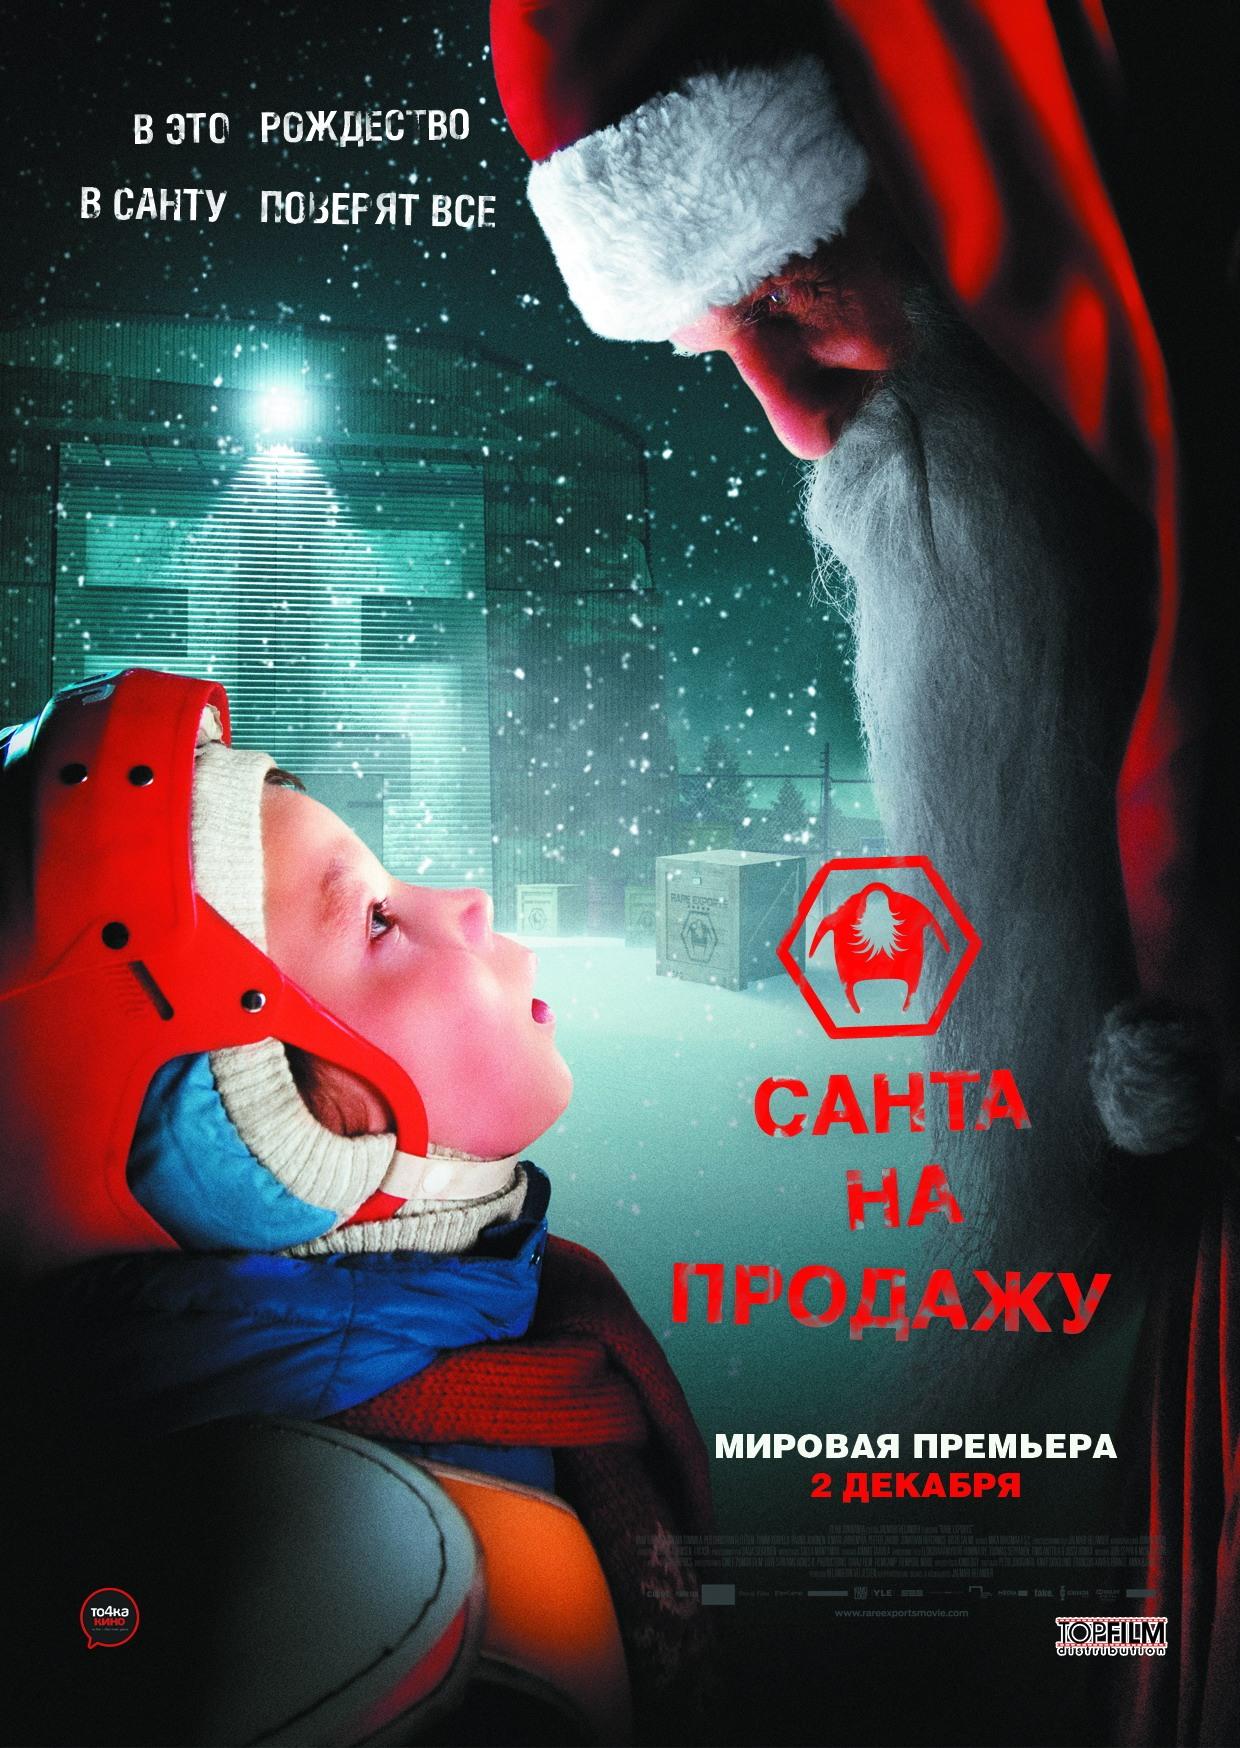 Постер фильма Санта на продажу | Rare Exports: A Christmas Tale